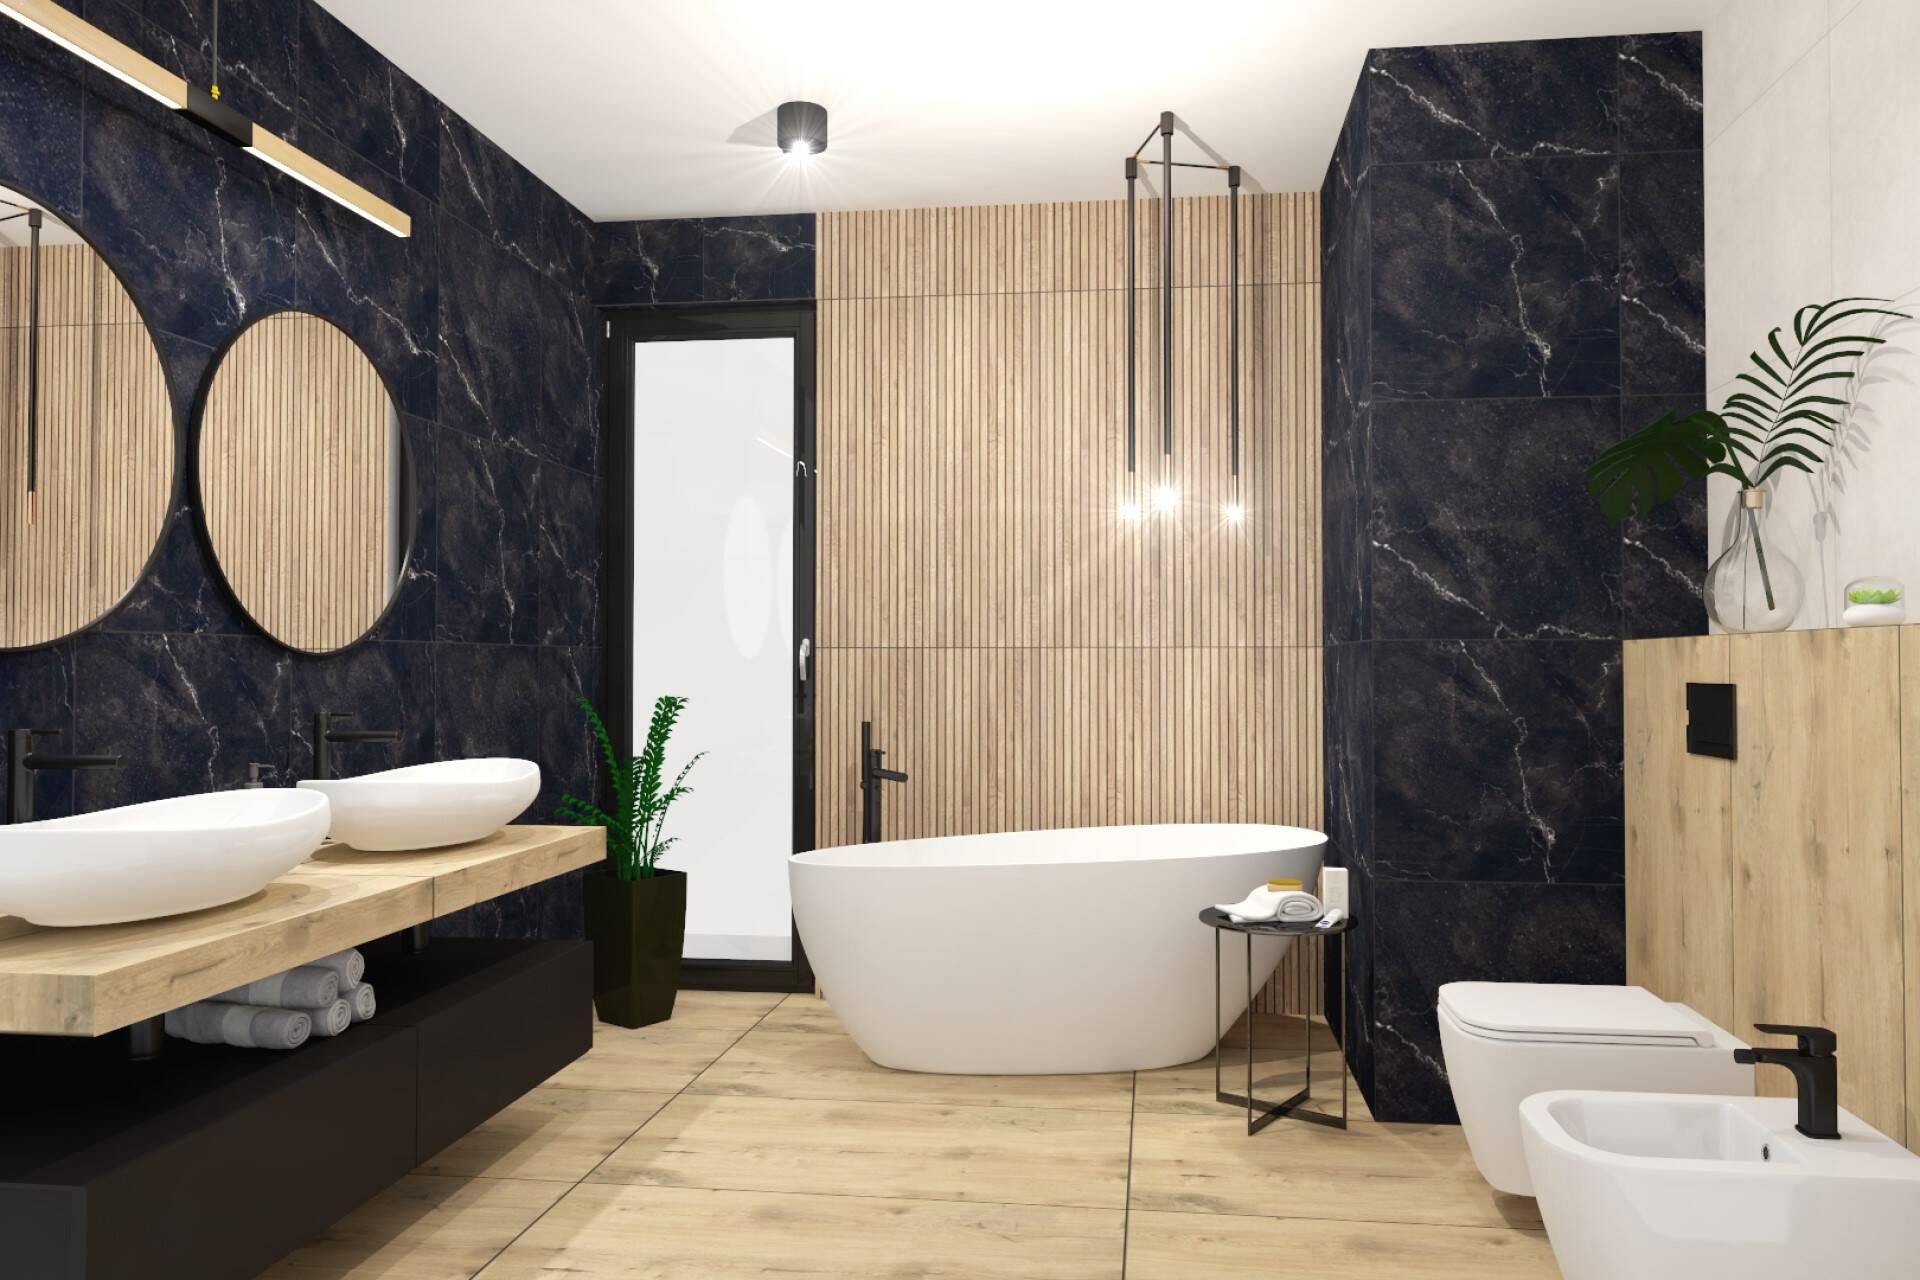 Tanie płytki łazienkowe - Salon łazienek Lubar - wizualizacja 3d - styl loftowy